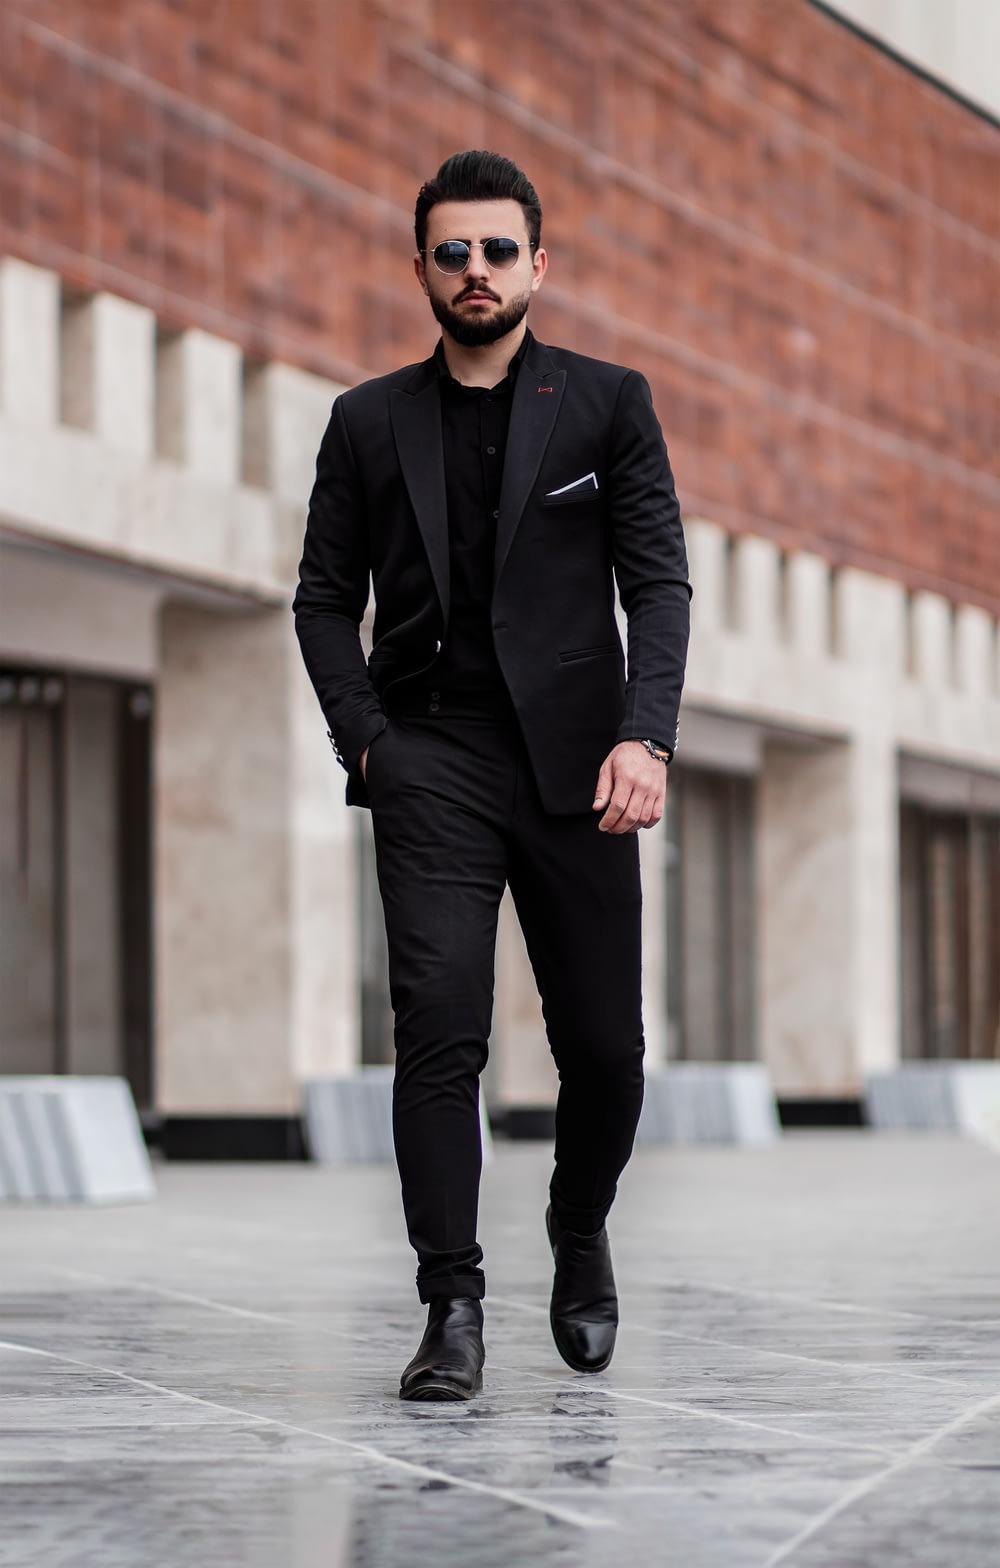 검은 양복 재킷과 검은 바지를 입은 남자가 낮 동안 회색 콘크리트 바닥에 서 있다